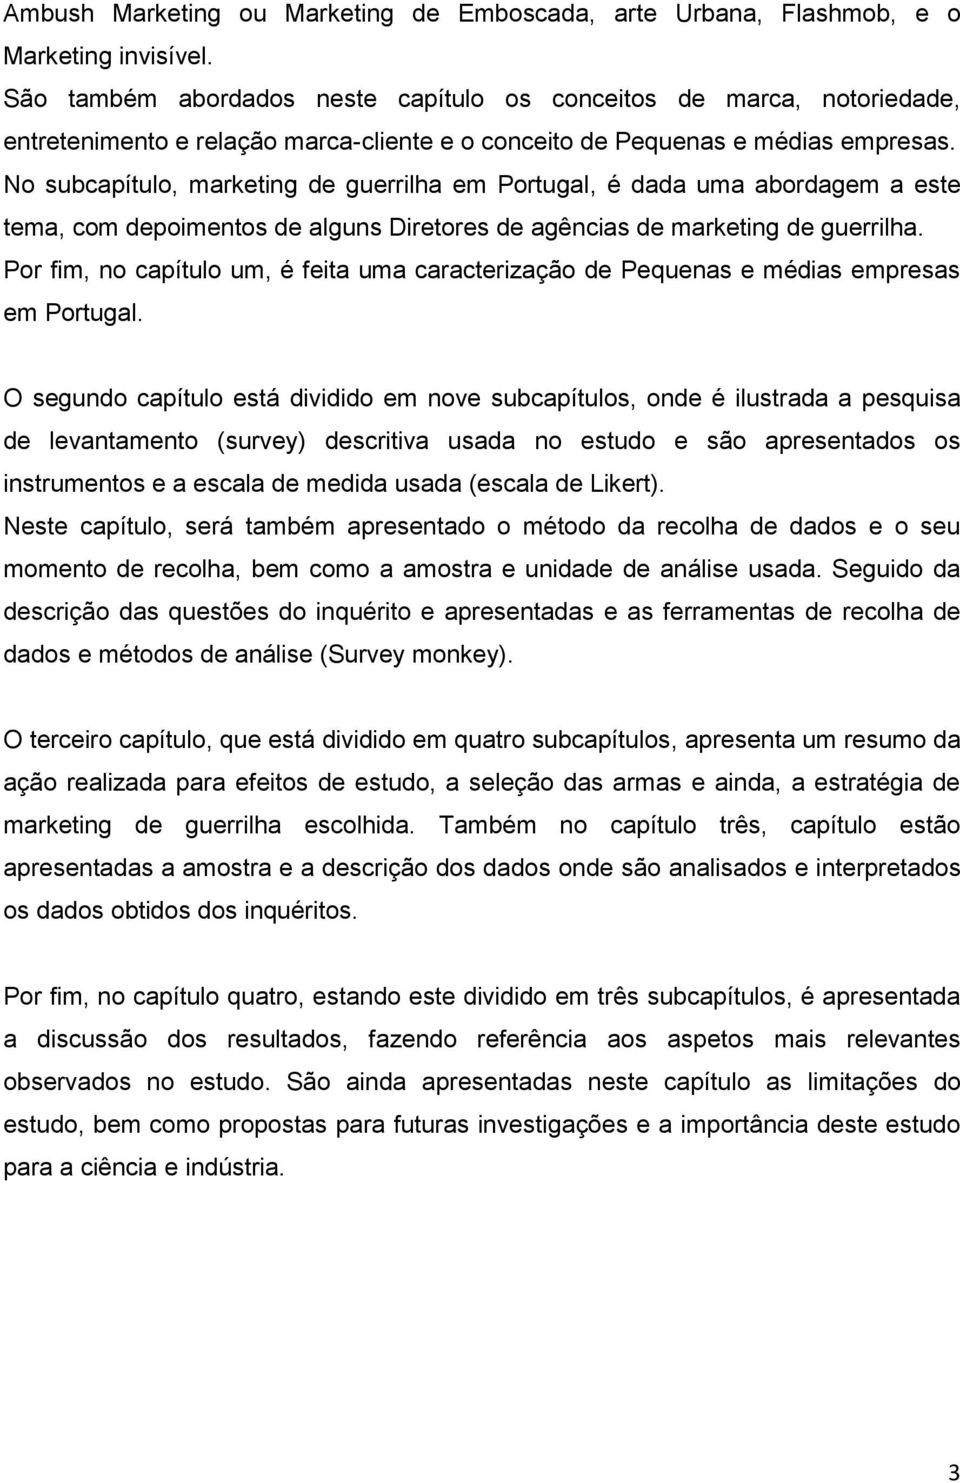 No subcapítulo, marketing de guerrilha em Portugal, é dada uma abordagem a este tema, com depoimentos de alguns Diretores de agências de marketing de guerrilha.